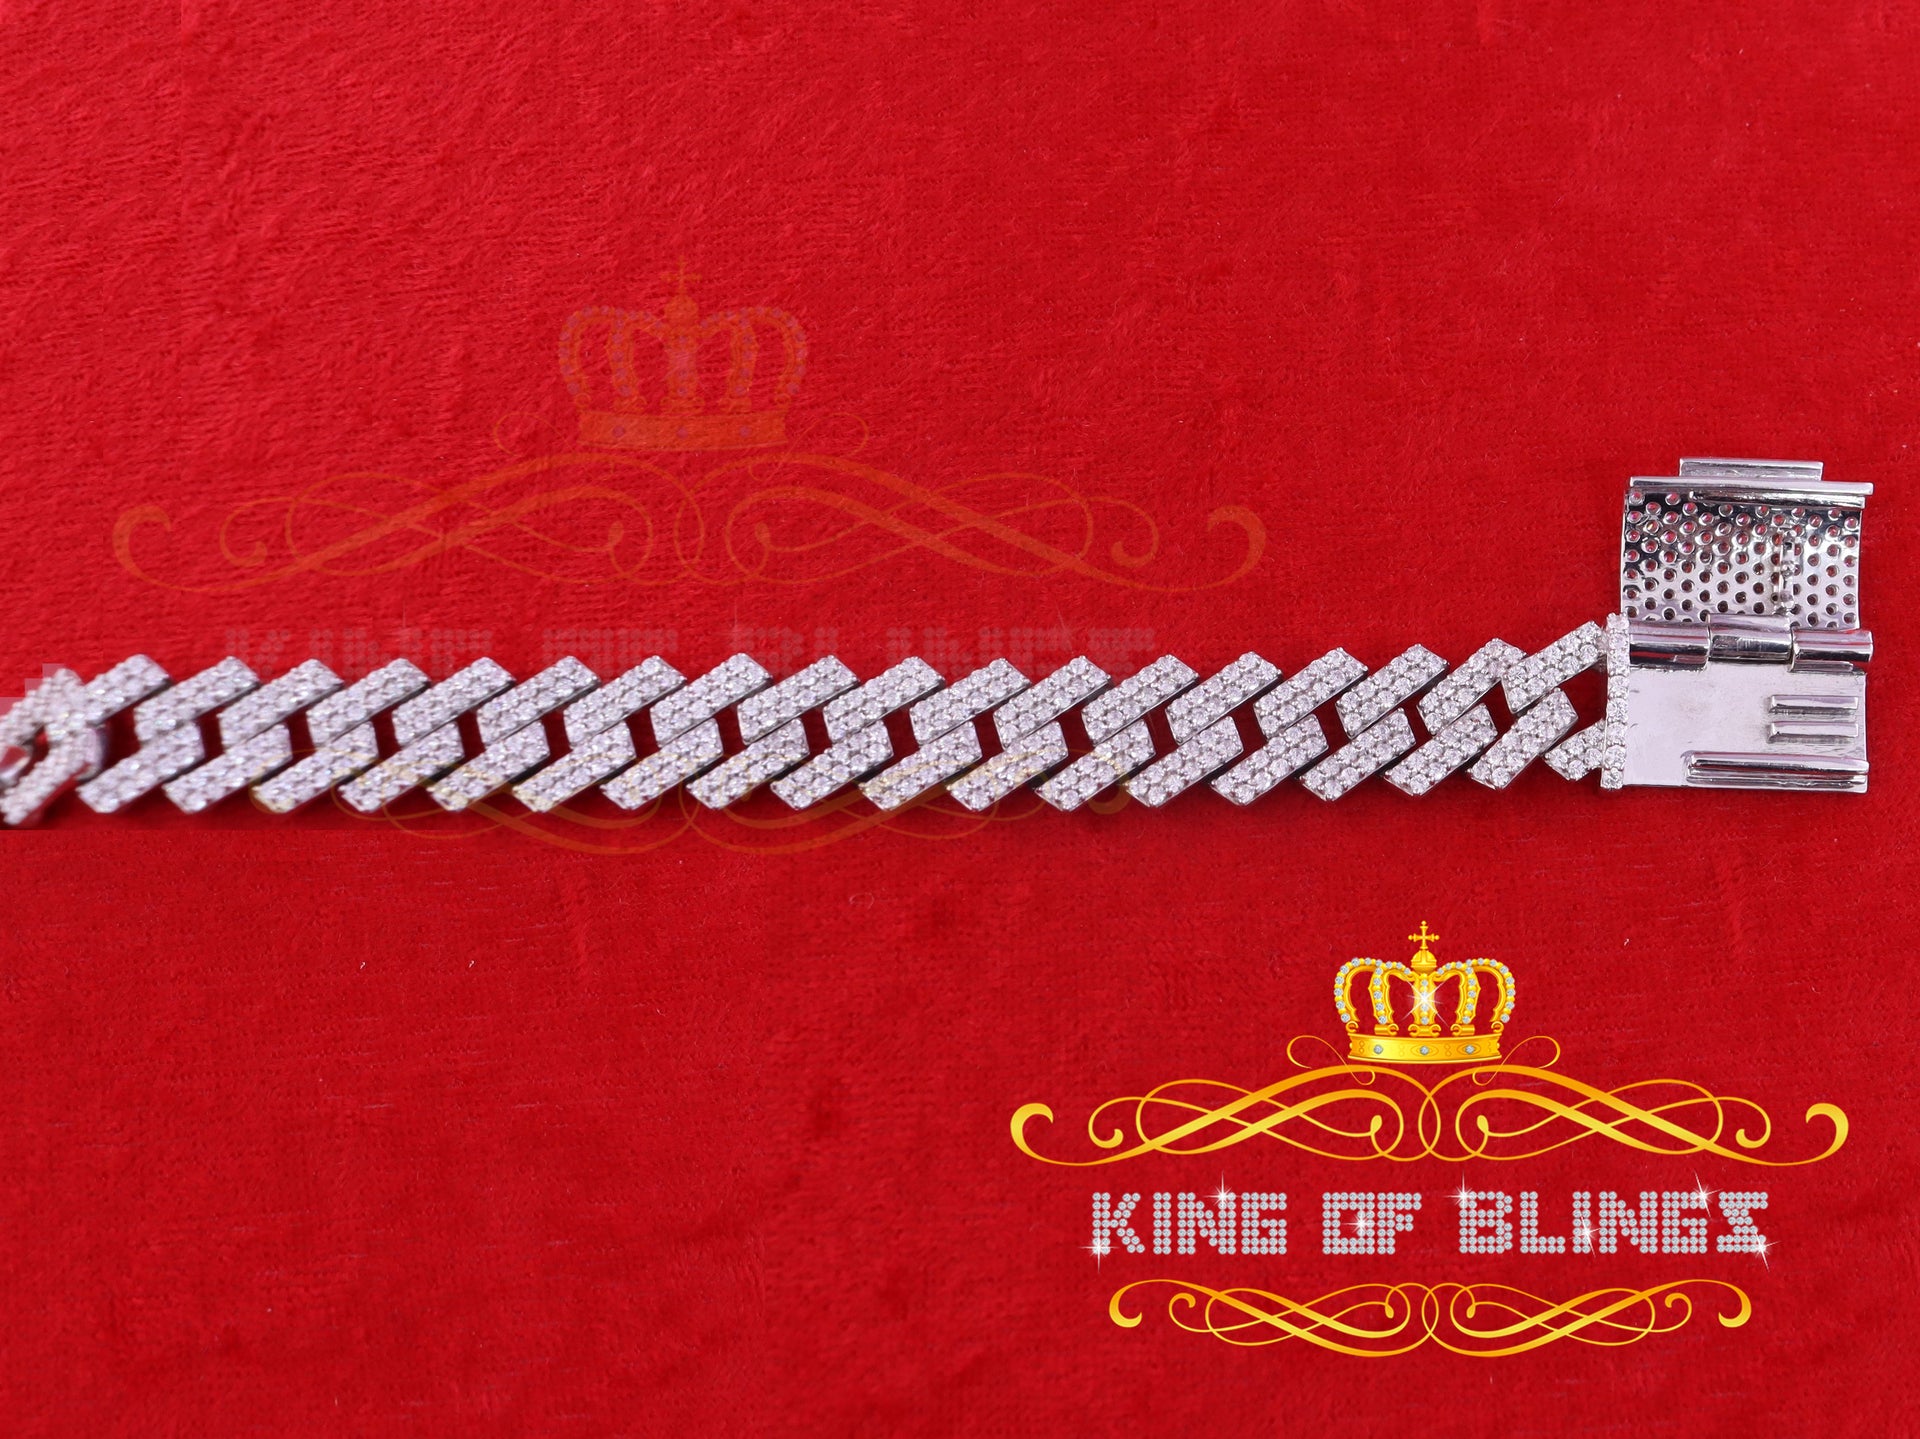 925 Silver 14.52ct Cubic Zircon White Cuban Bracelet Men's SZ 9 inch /16mm Width KING OF BLINGS